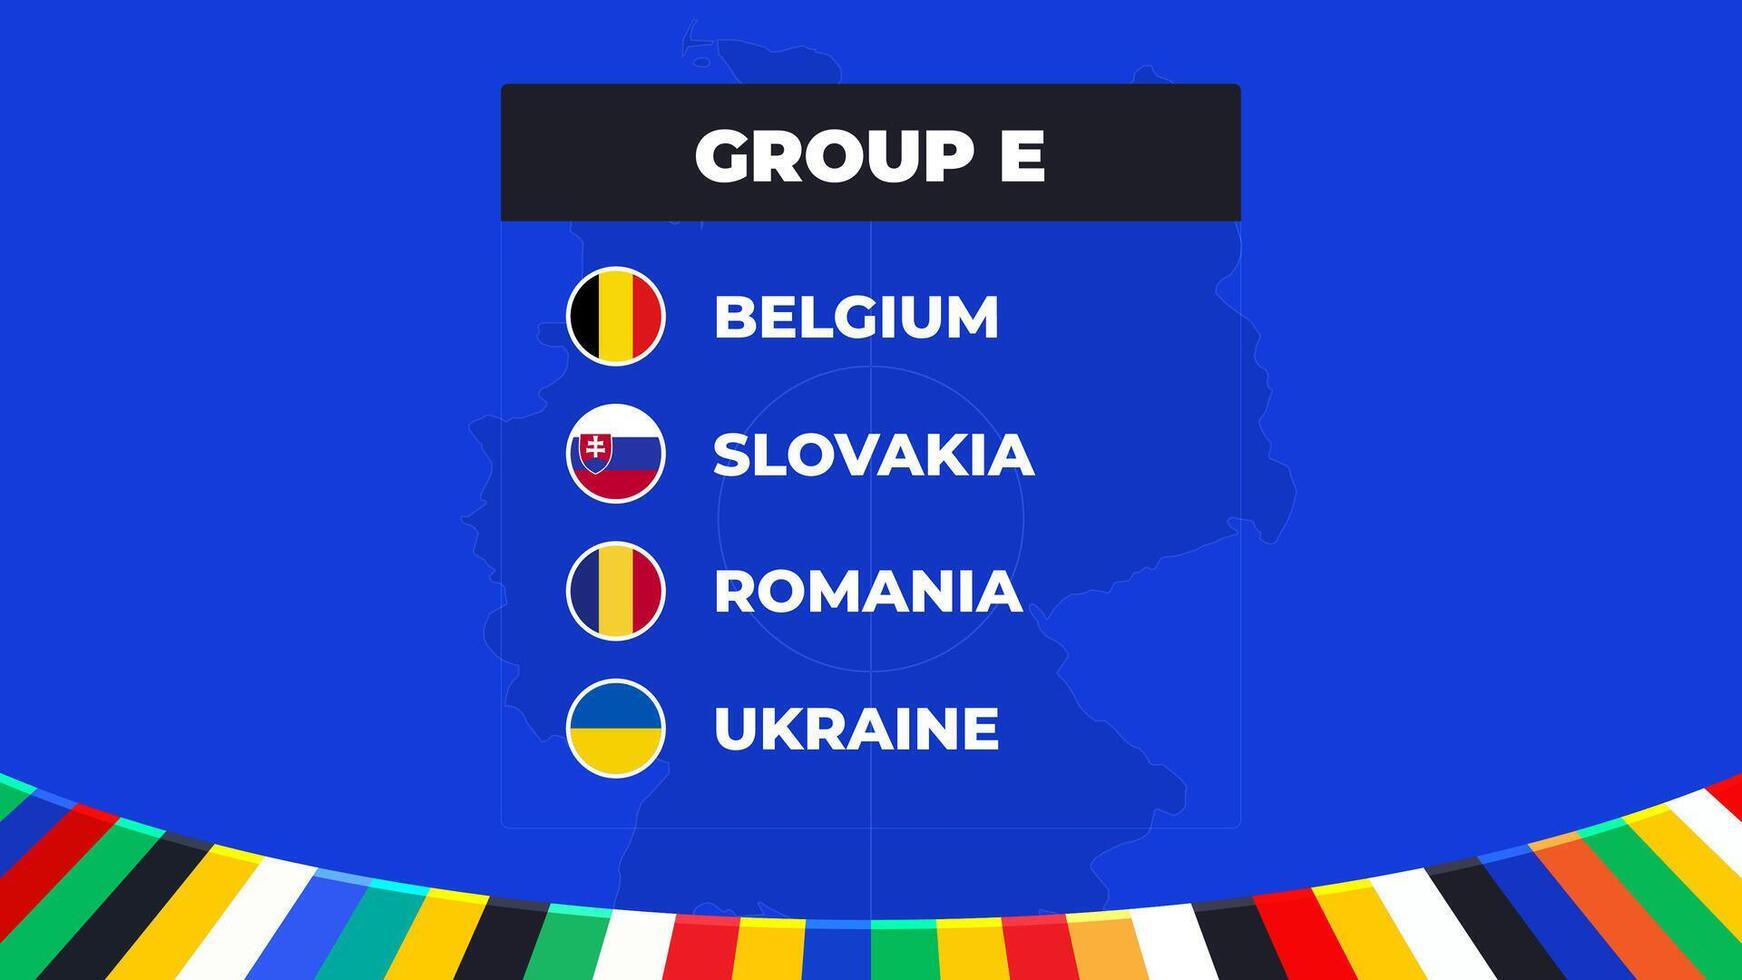 grupp e av de europeisk fotboll turnering i Tyskland 2024 grupp skede av europeisk fotboll tävlingar i Tyskland vektor